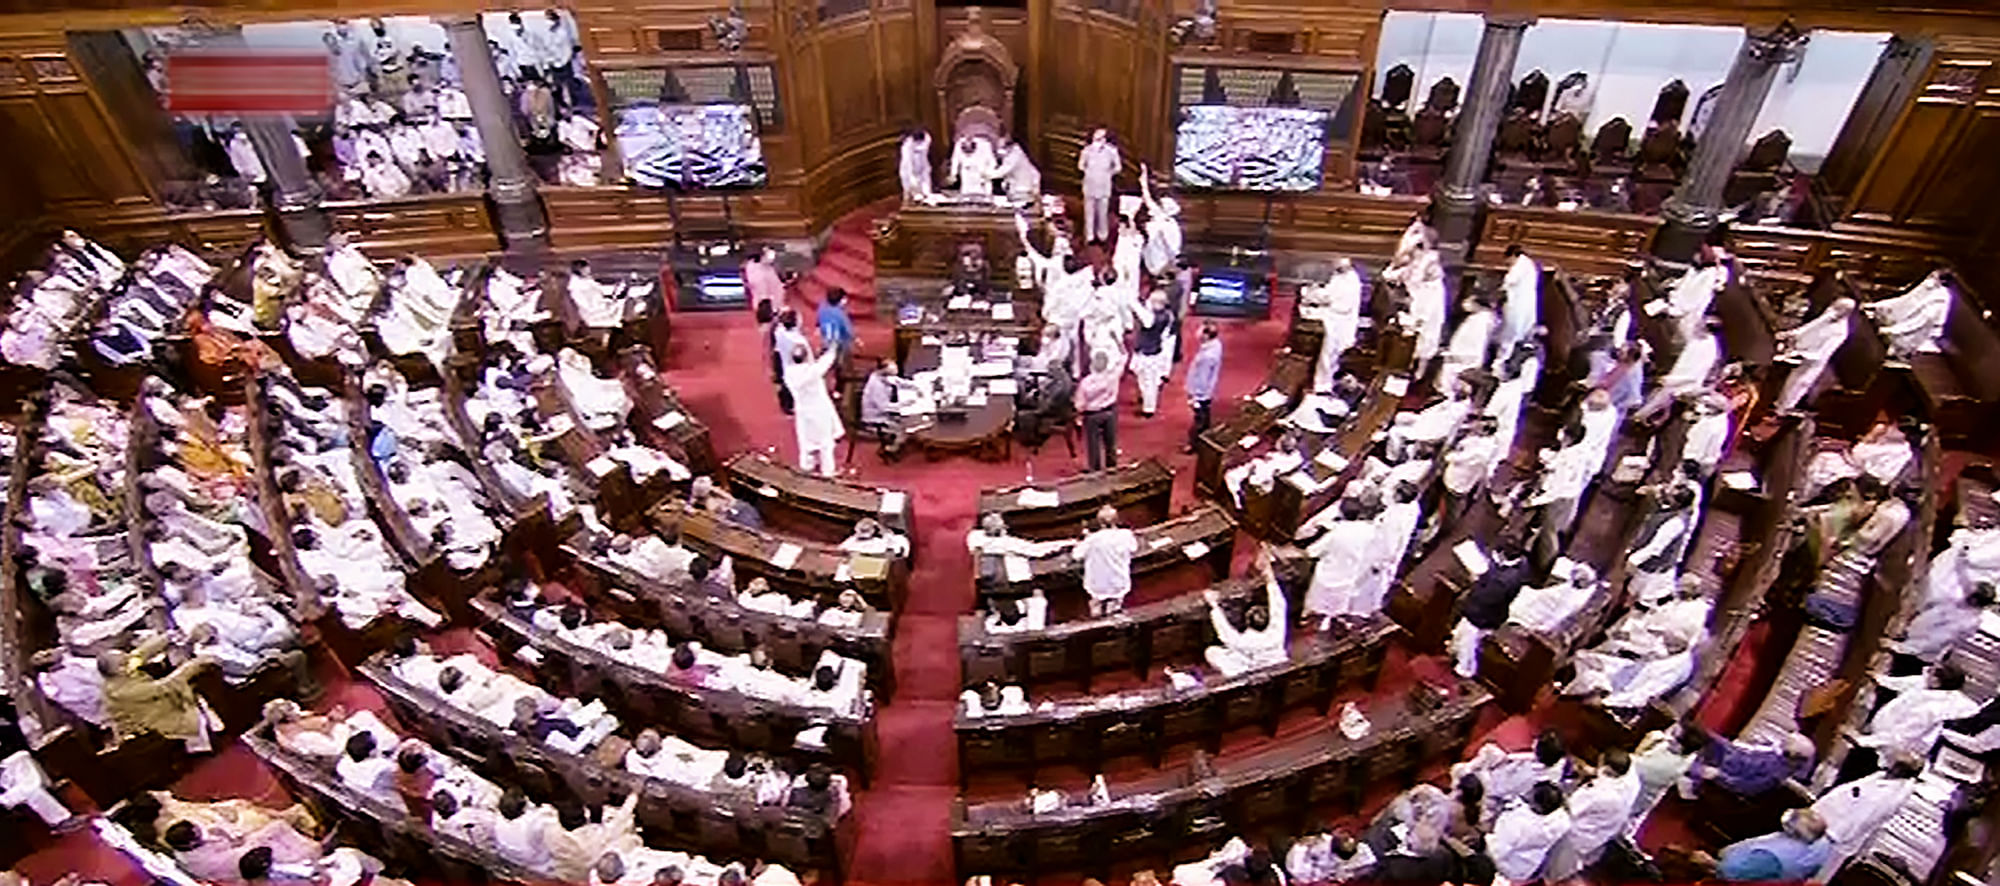 <div class="paragraphs"><p>Parliament Monsoon Session|संसद सत्र की हंगामेदार रही शुरुआत</p></div>